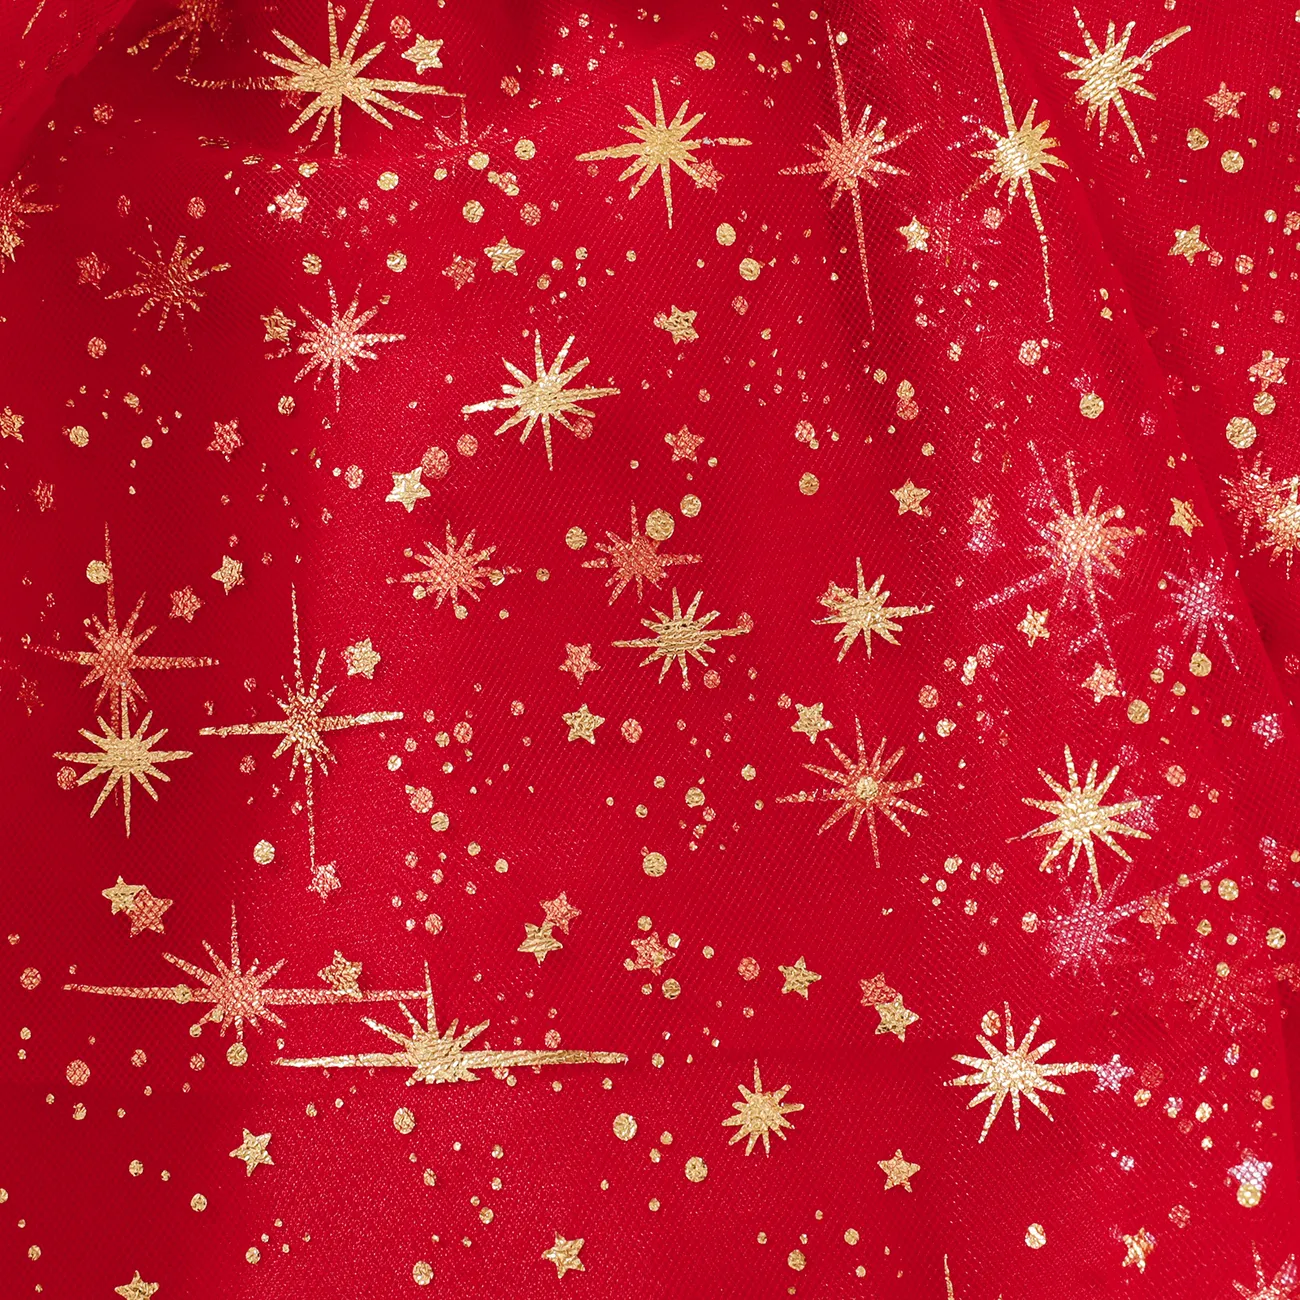 Natale 3 pezzi Neonato Dolce Manica lunga Vestito con gonna rosso bianco big image 1